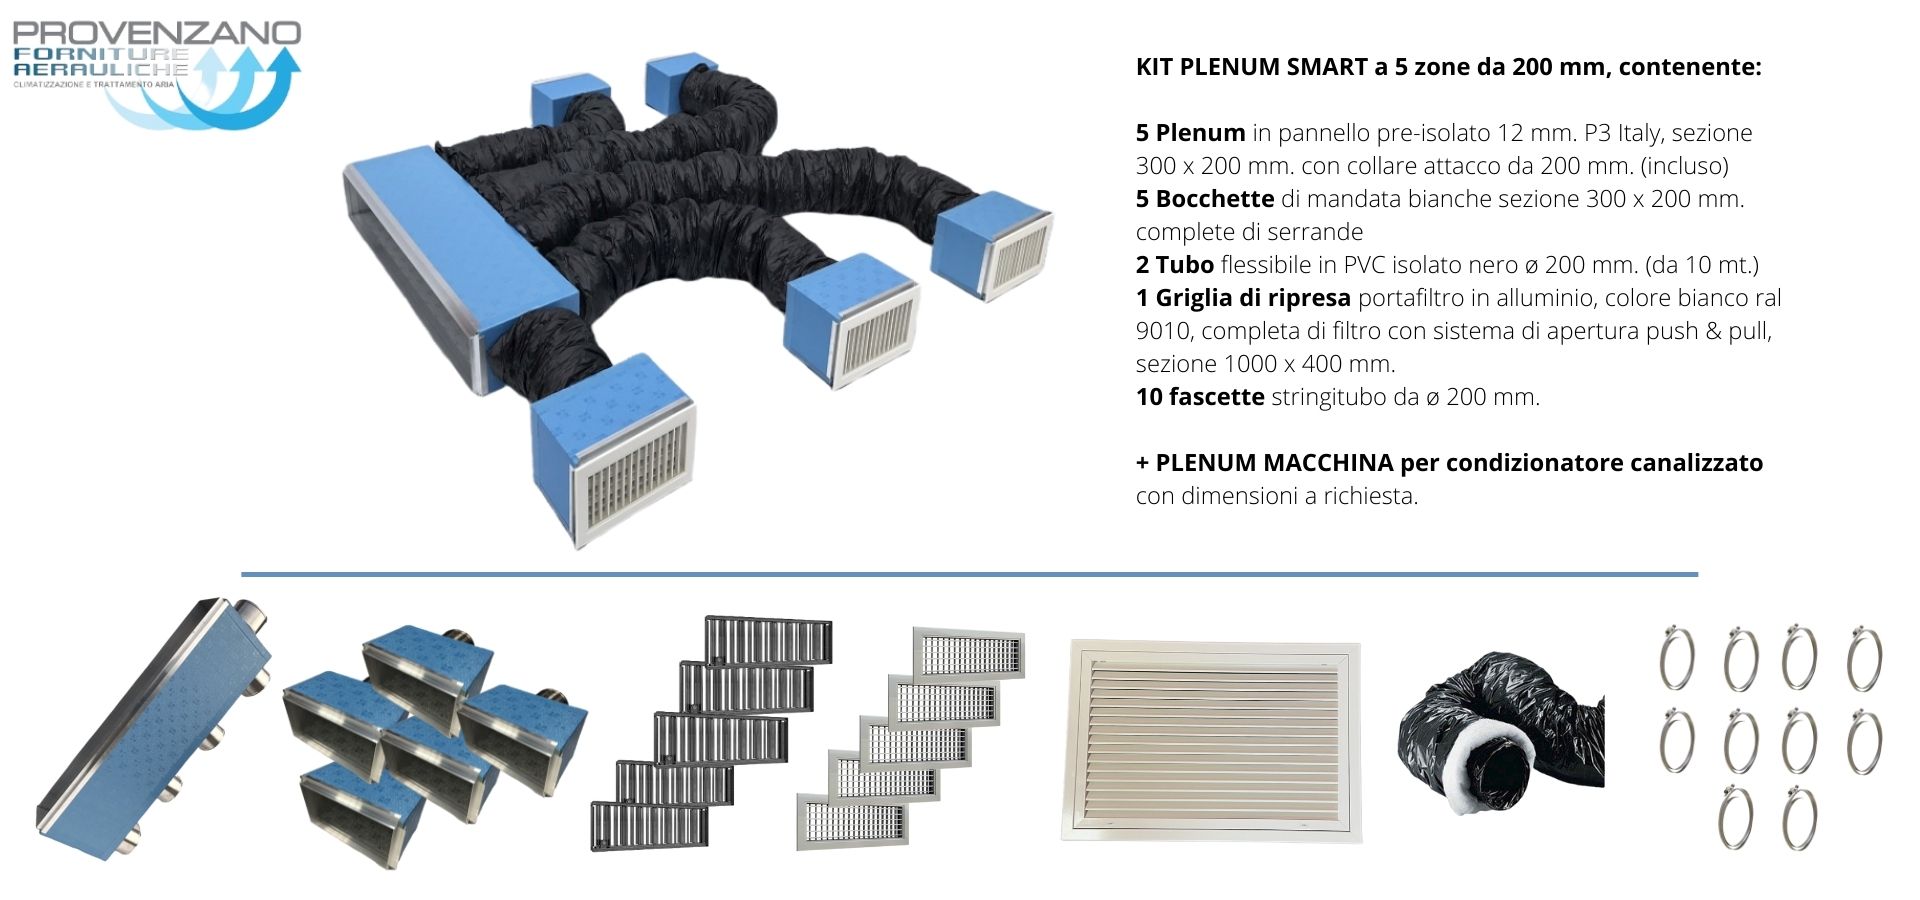 Kit PLENUM SMART a 5 zone da 200 mm + Plenum macchina con attacco per distribuzione aria condizionata